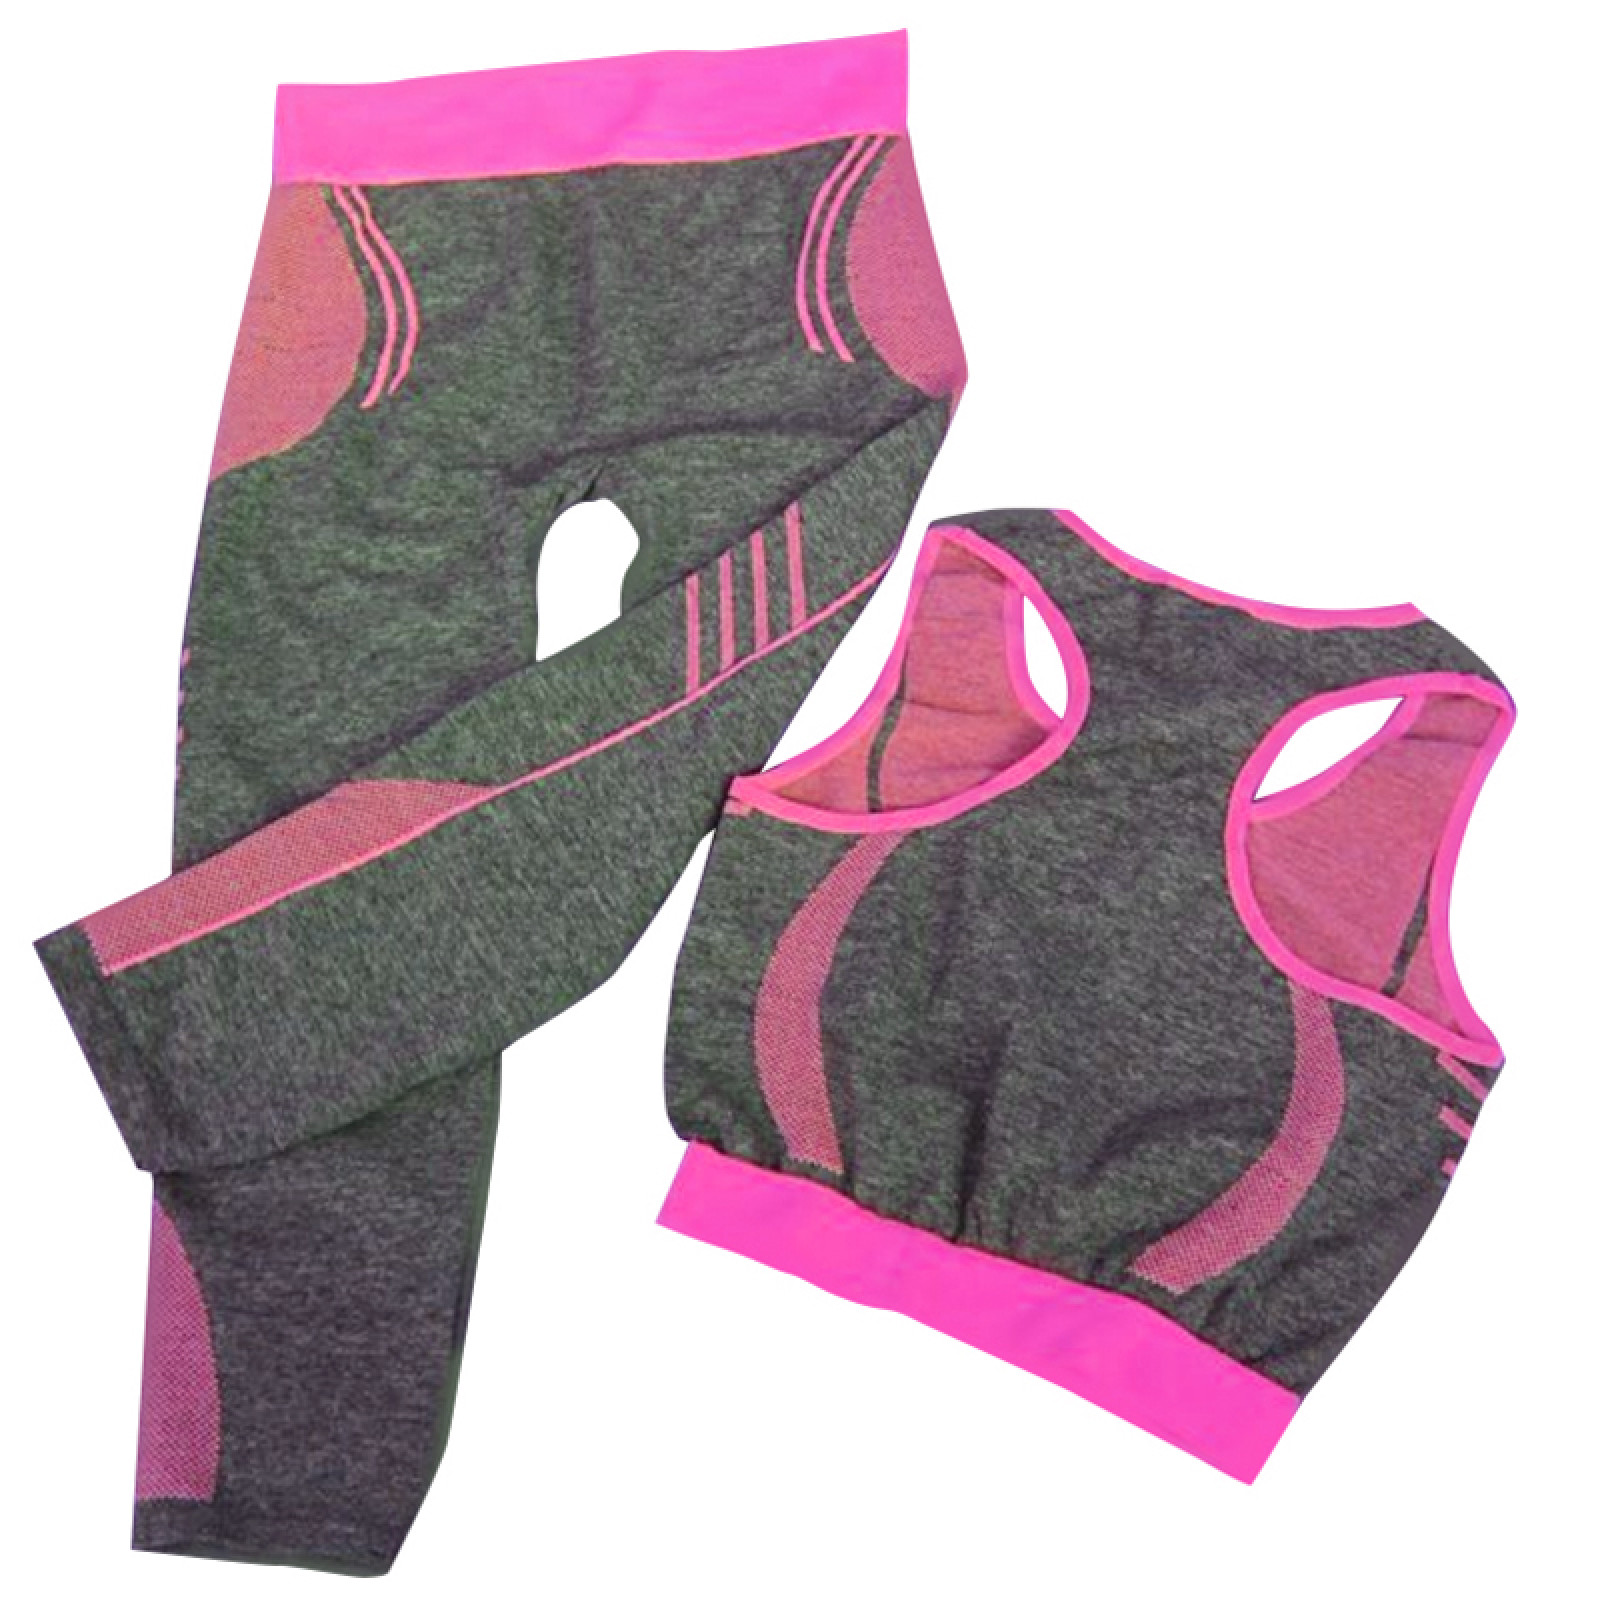 Женская майка и лосины для фитнеса, йоги, бега Yoga Wear A Suit Slimming  розовые 130591